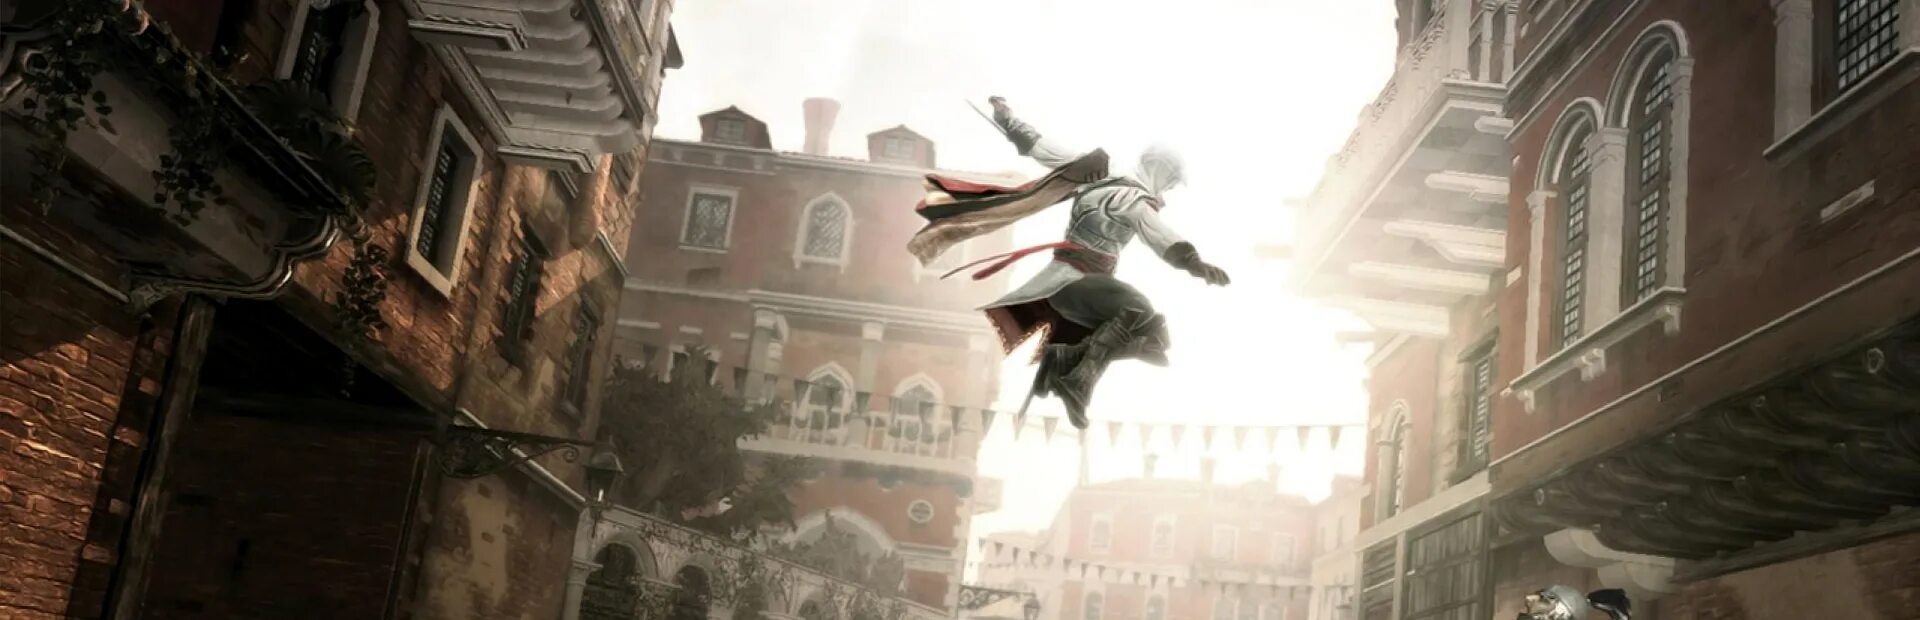 Ассасин крид 2 стим. Assassin's Creed 2. Assassin's Creed 2 обои 1920х1080. Assassins Creed II Steam. NIER Automata 2и арт фон.